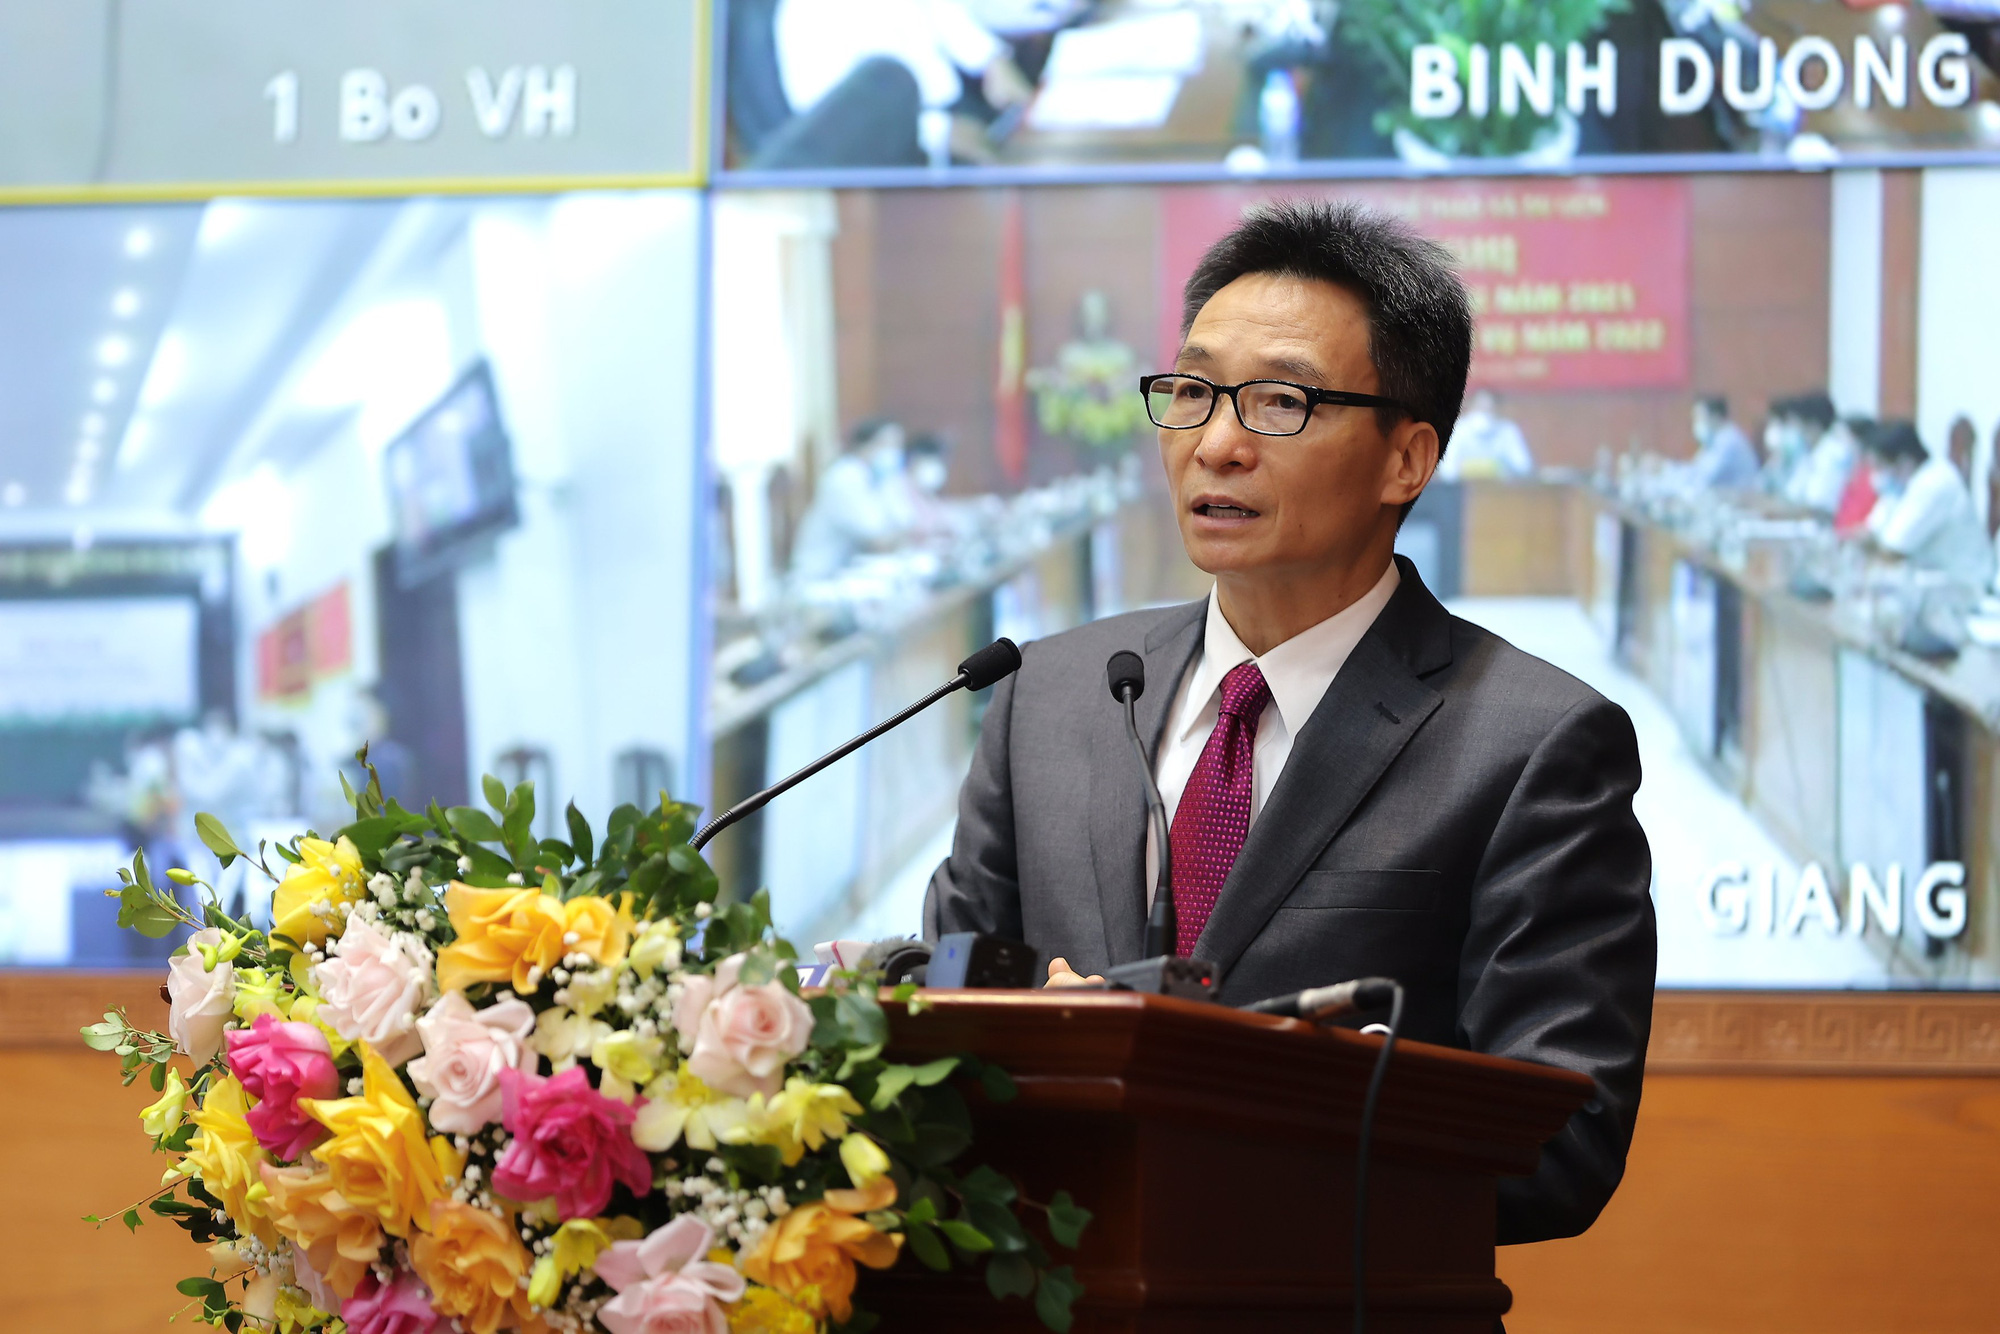 Phó Thủ tướng: “Phải tiếp tục phát huy được truyền thống văn hóa tốt đẹp của con người Việt Nam như lúc khó khăn, dịch bệnh” - Ảnh 5.